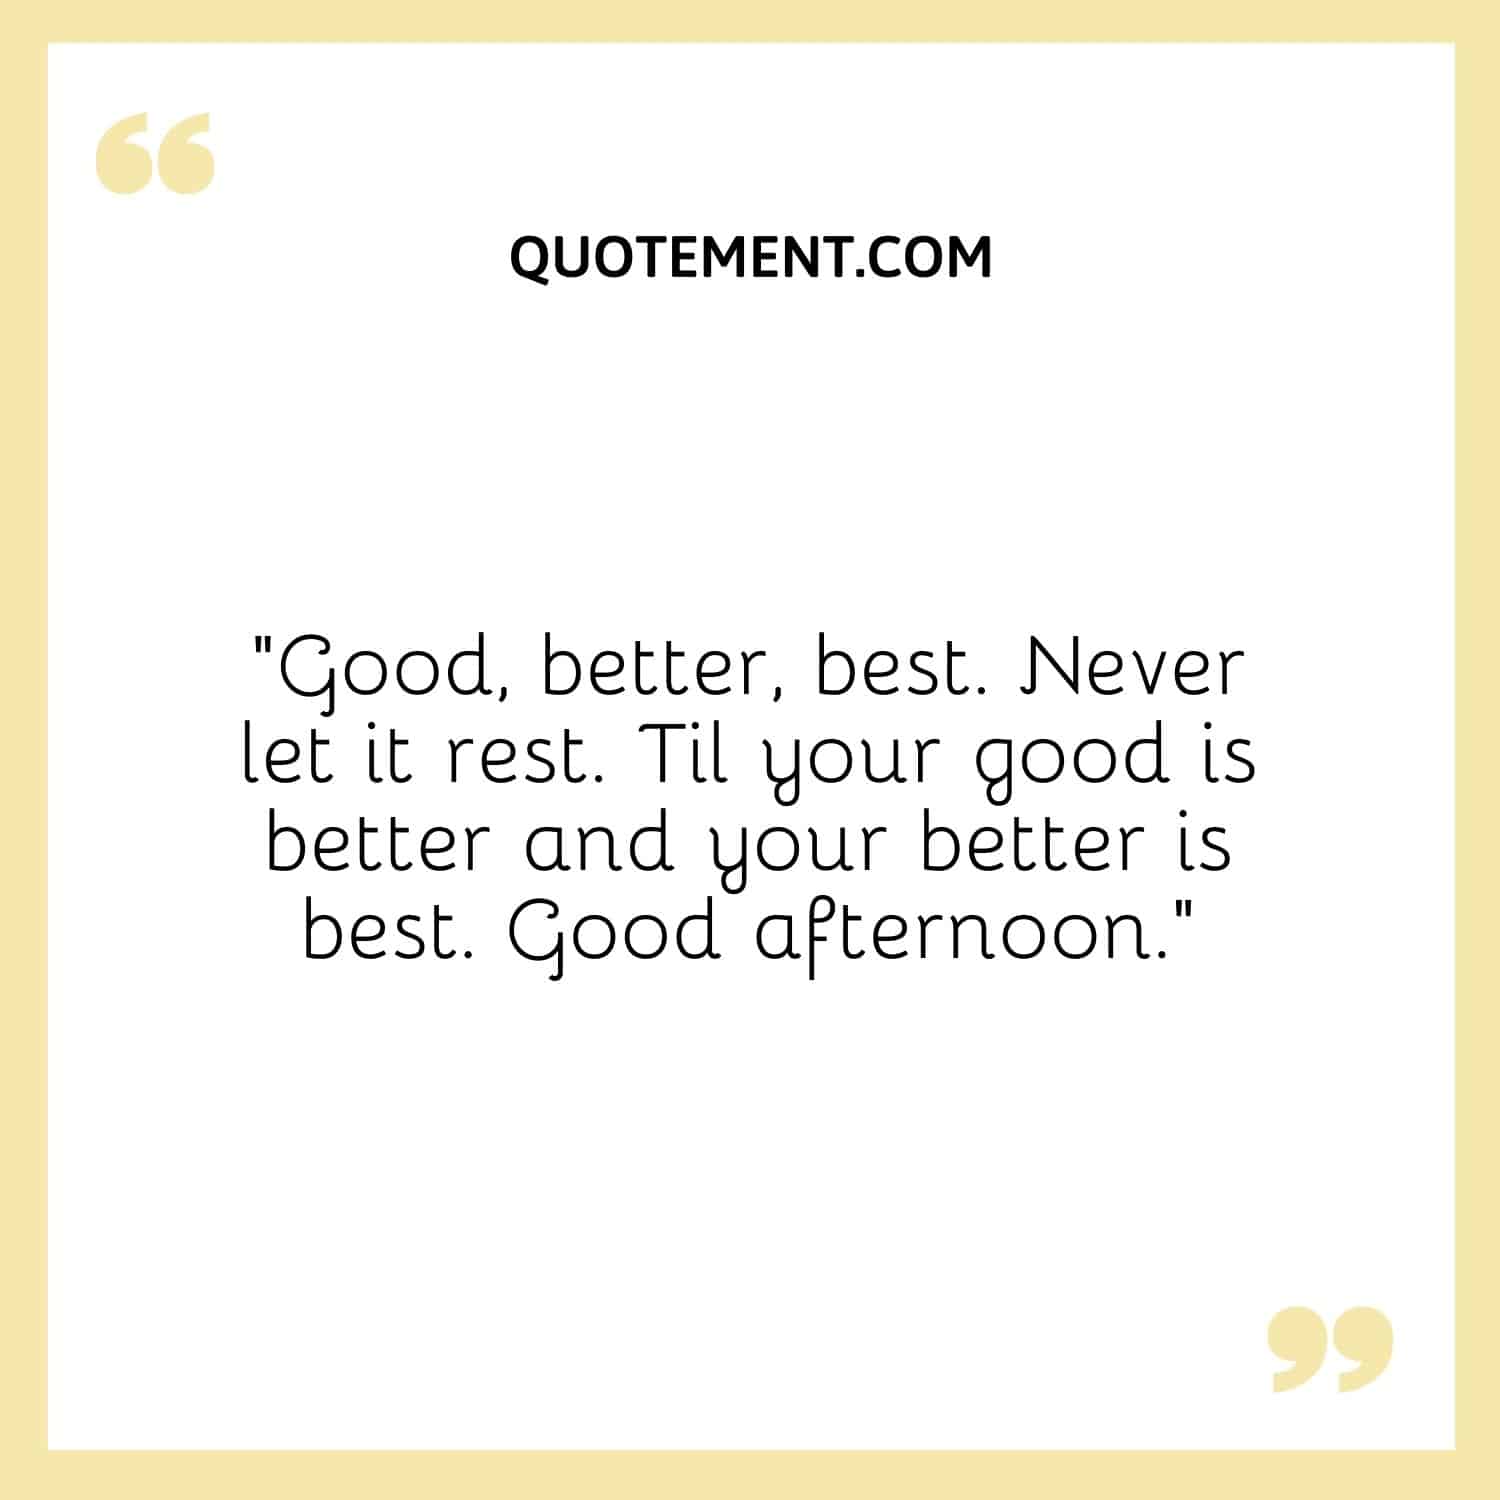 Good, better, best. Never let it rest. Til your good is better and your better is best. Good afternoon.